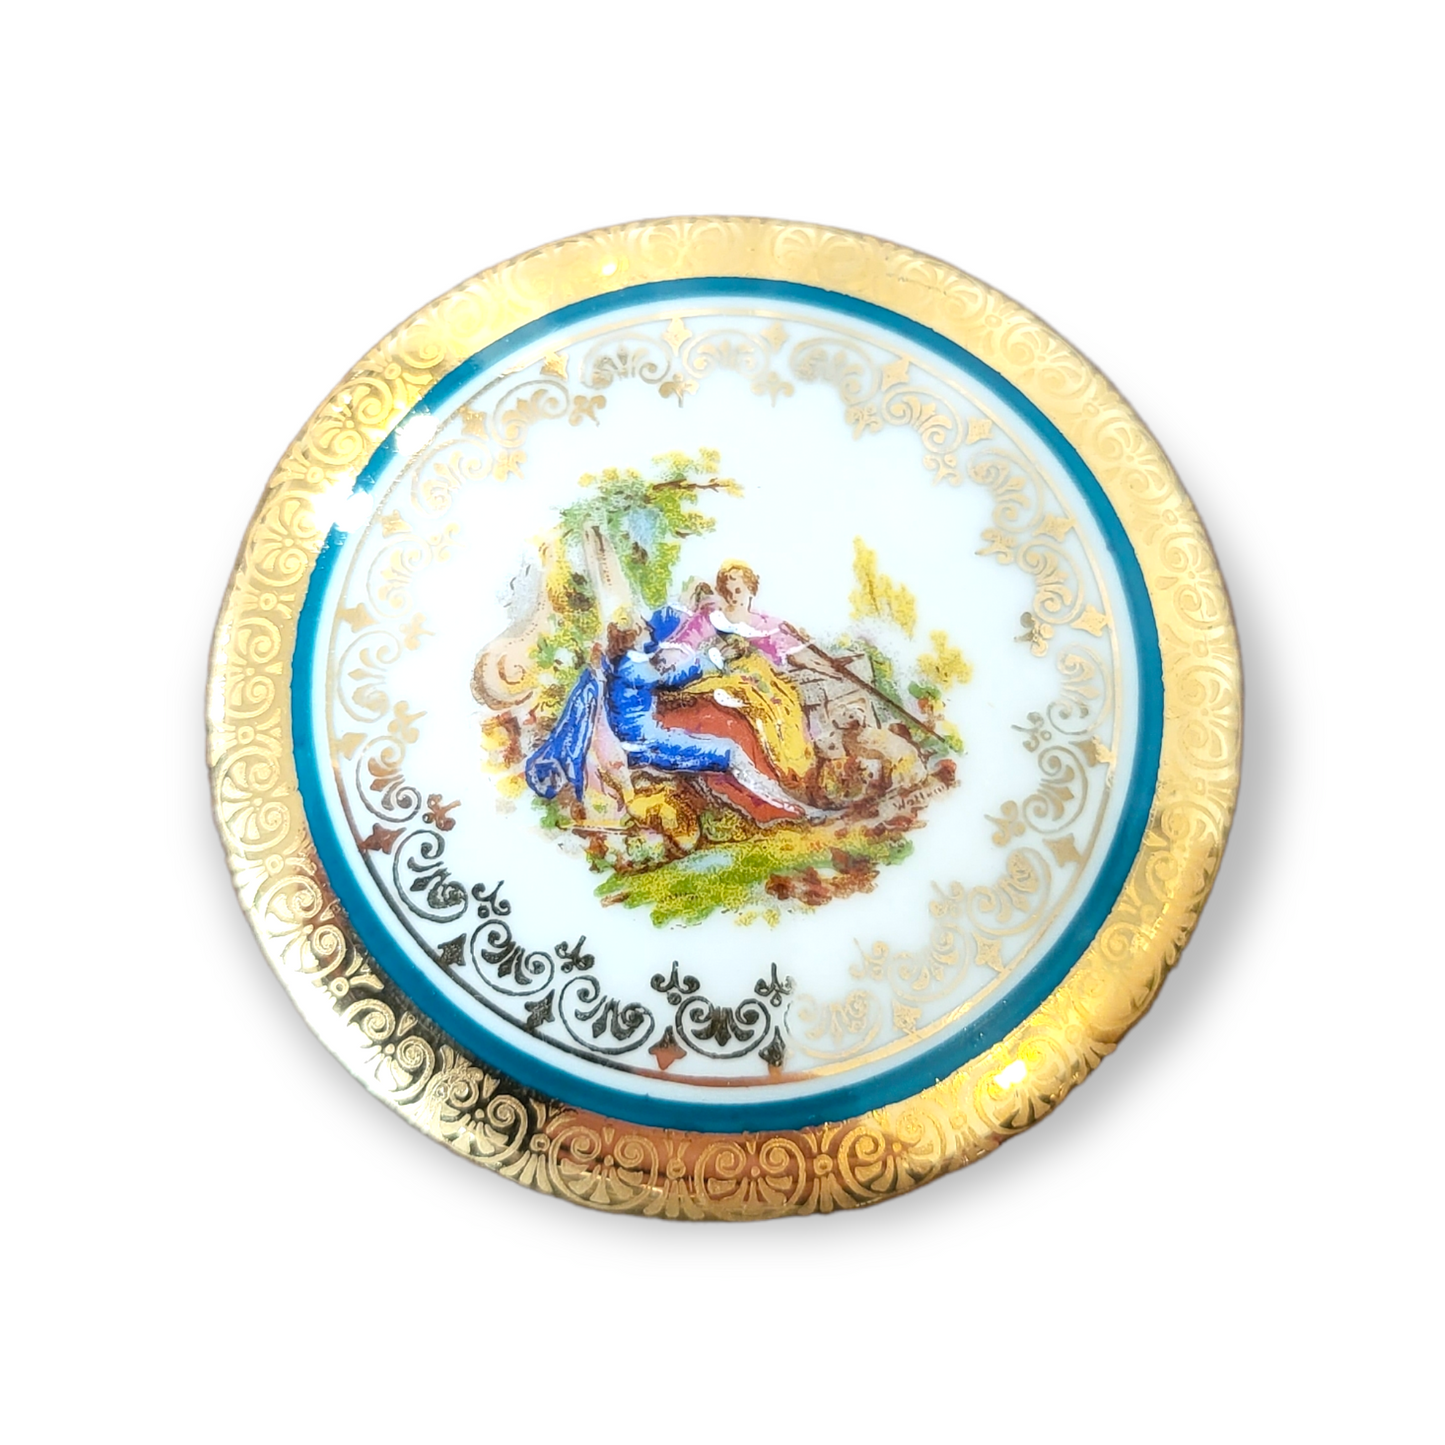 Vintage Porcelain Trinket Dish "Lemoges Porcelaine d'Art" - France